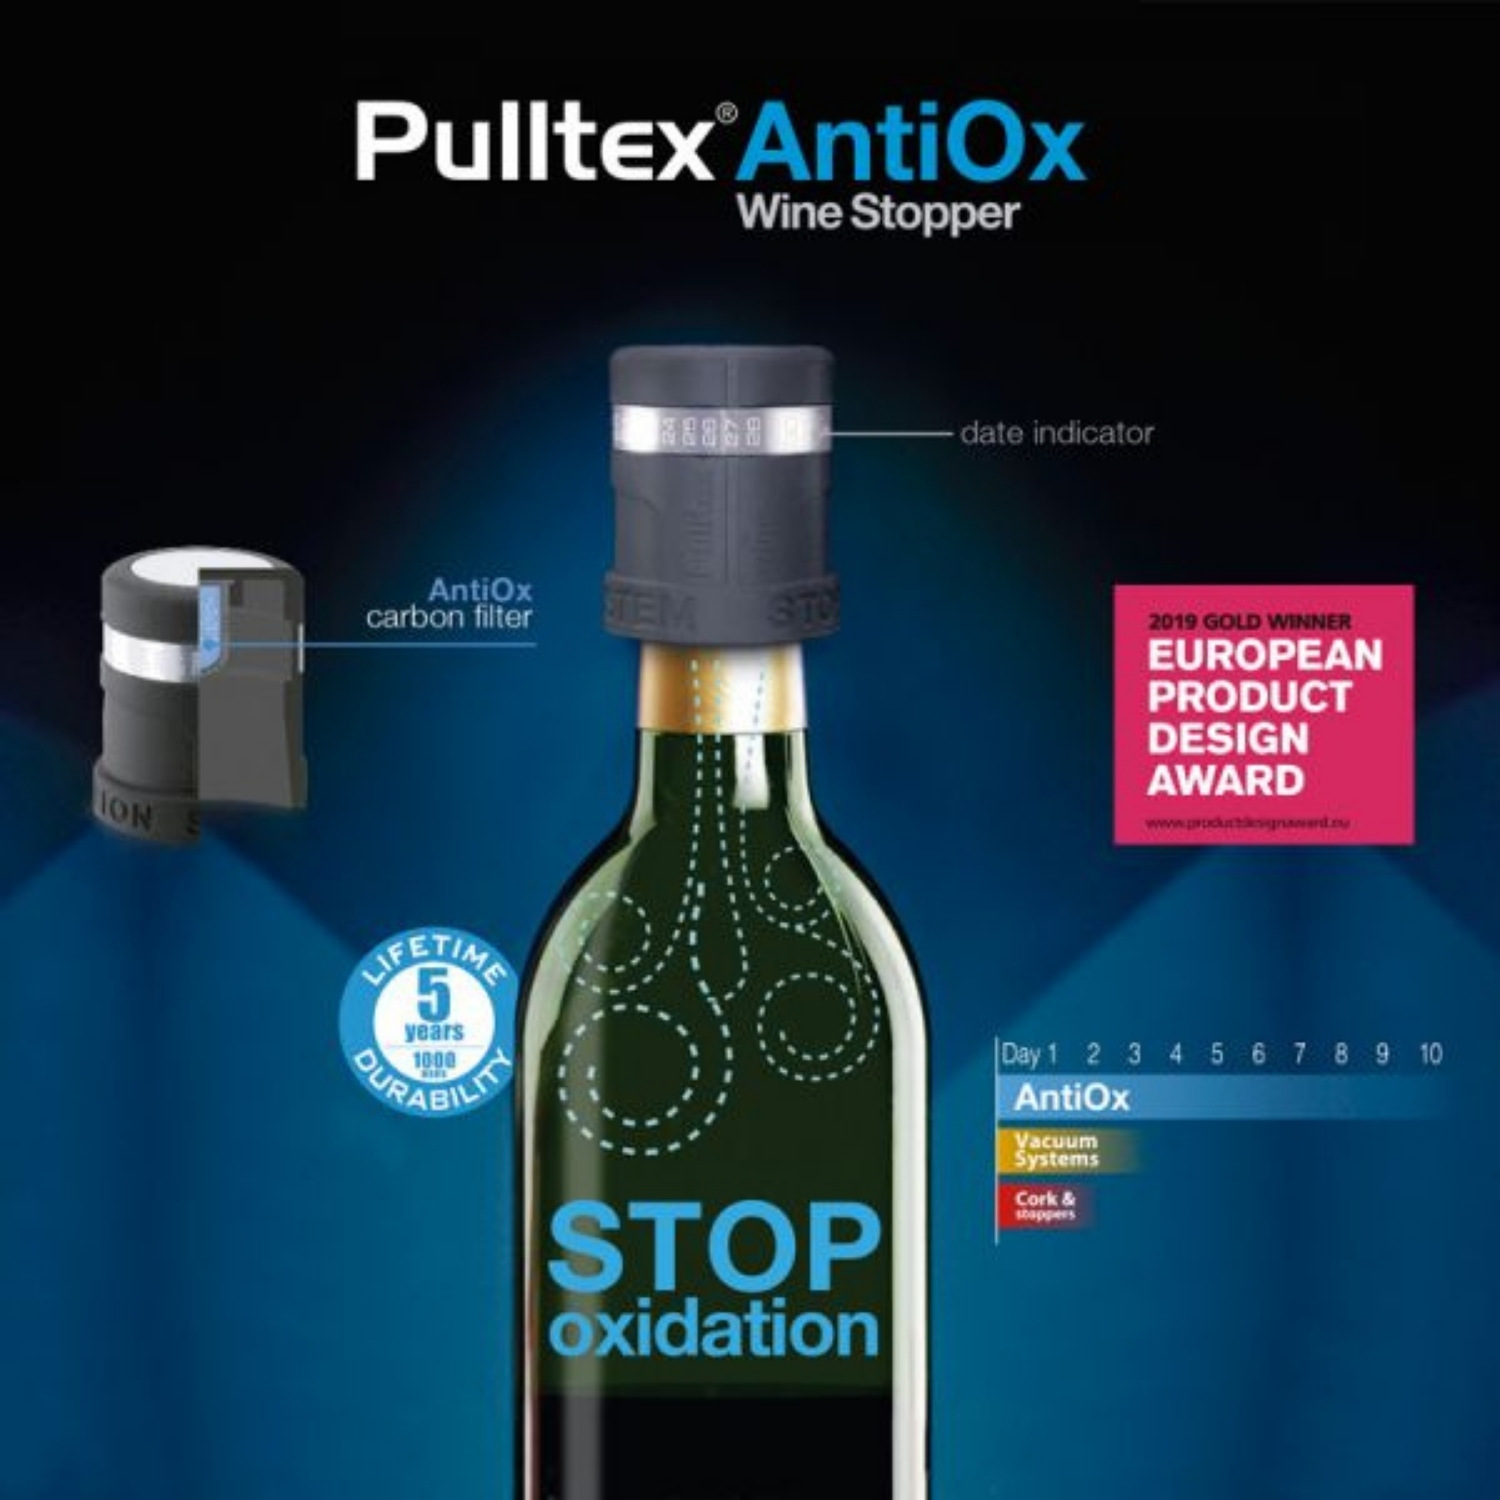 Pulltex AntiOx Wine Stopper